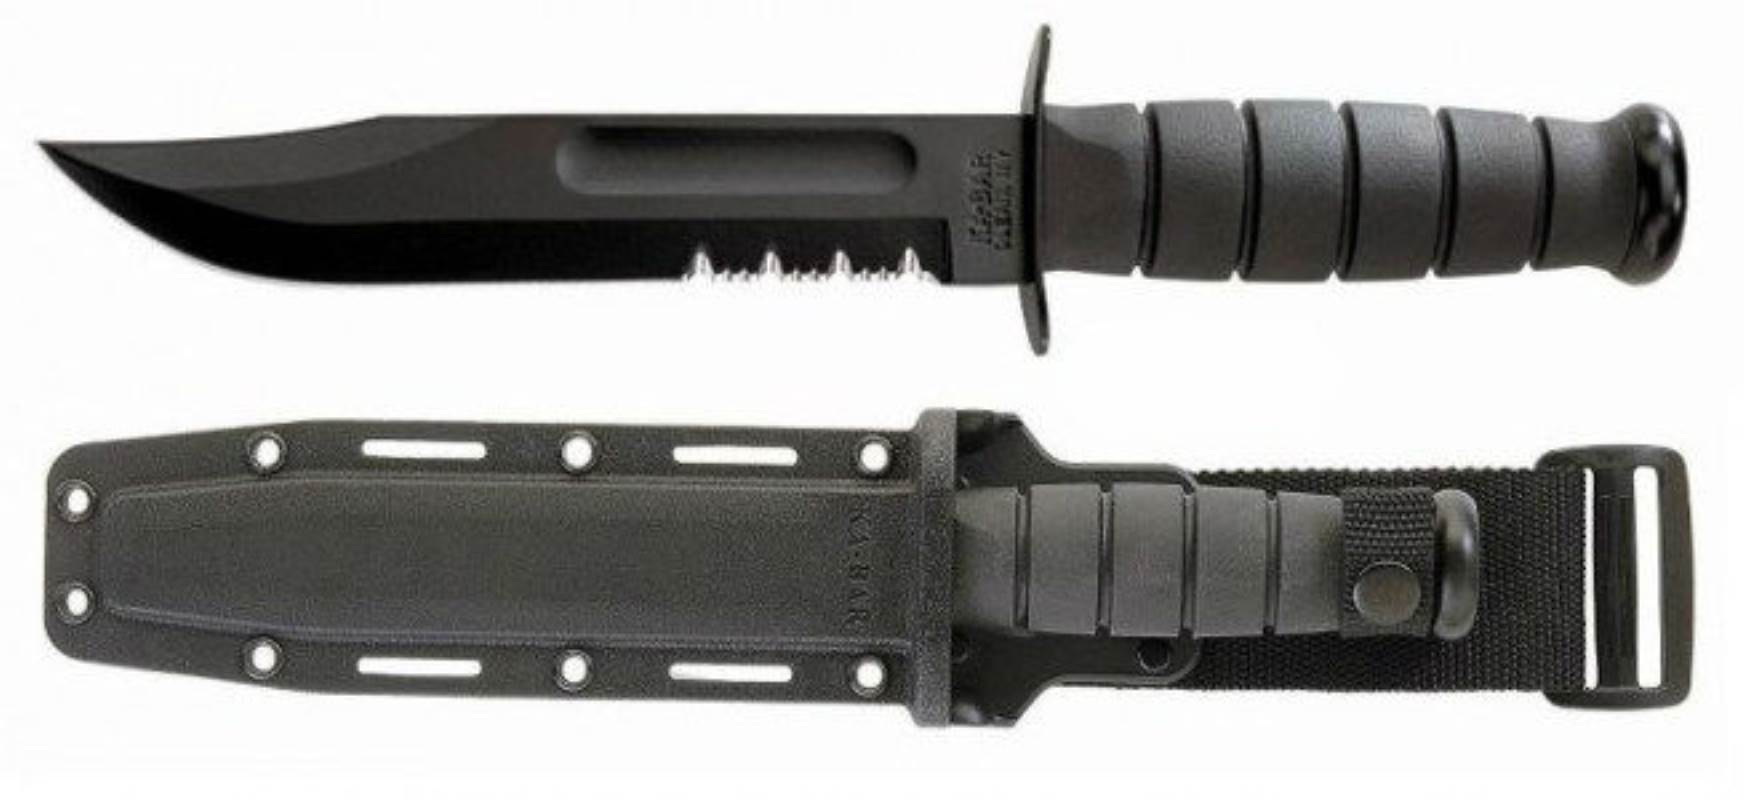 Serrated Black Knife - Hard Sheath